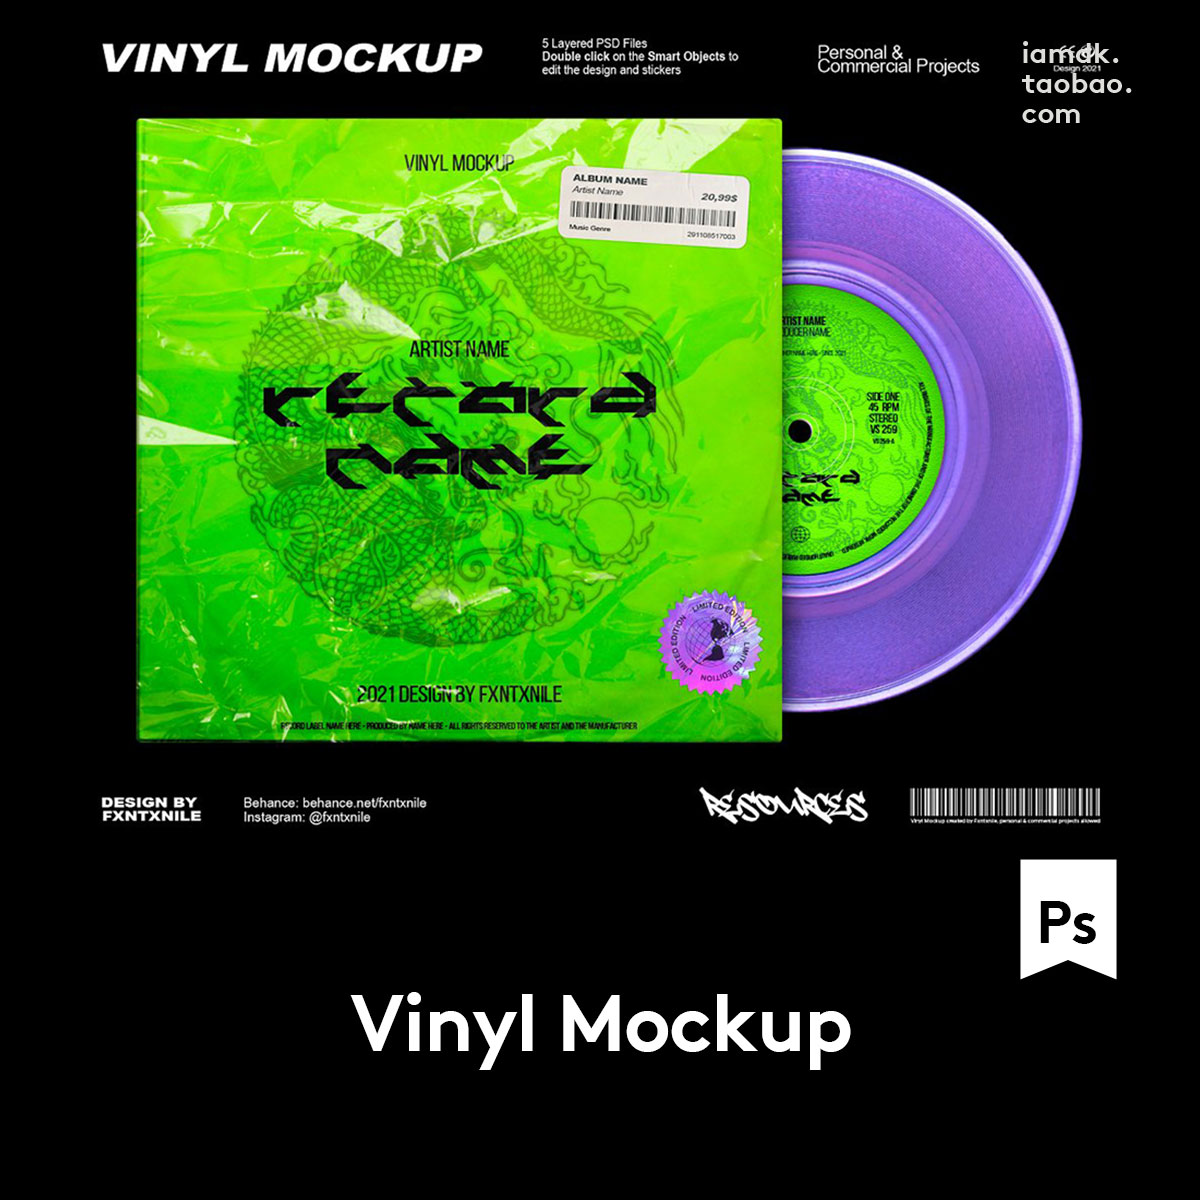 嘻哈酸性摇滚音乐CD黑胶唱片专辑包装袋封面视觉设计PSD样机素材